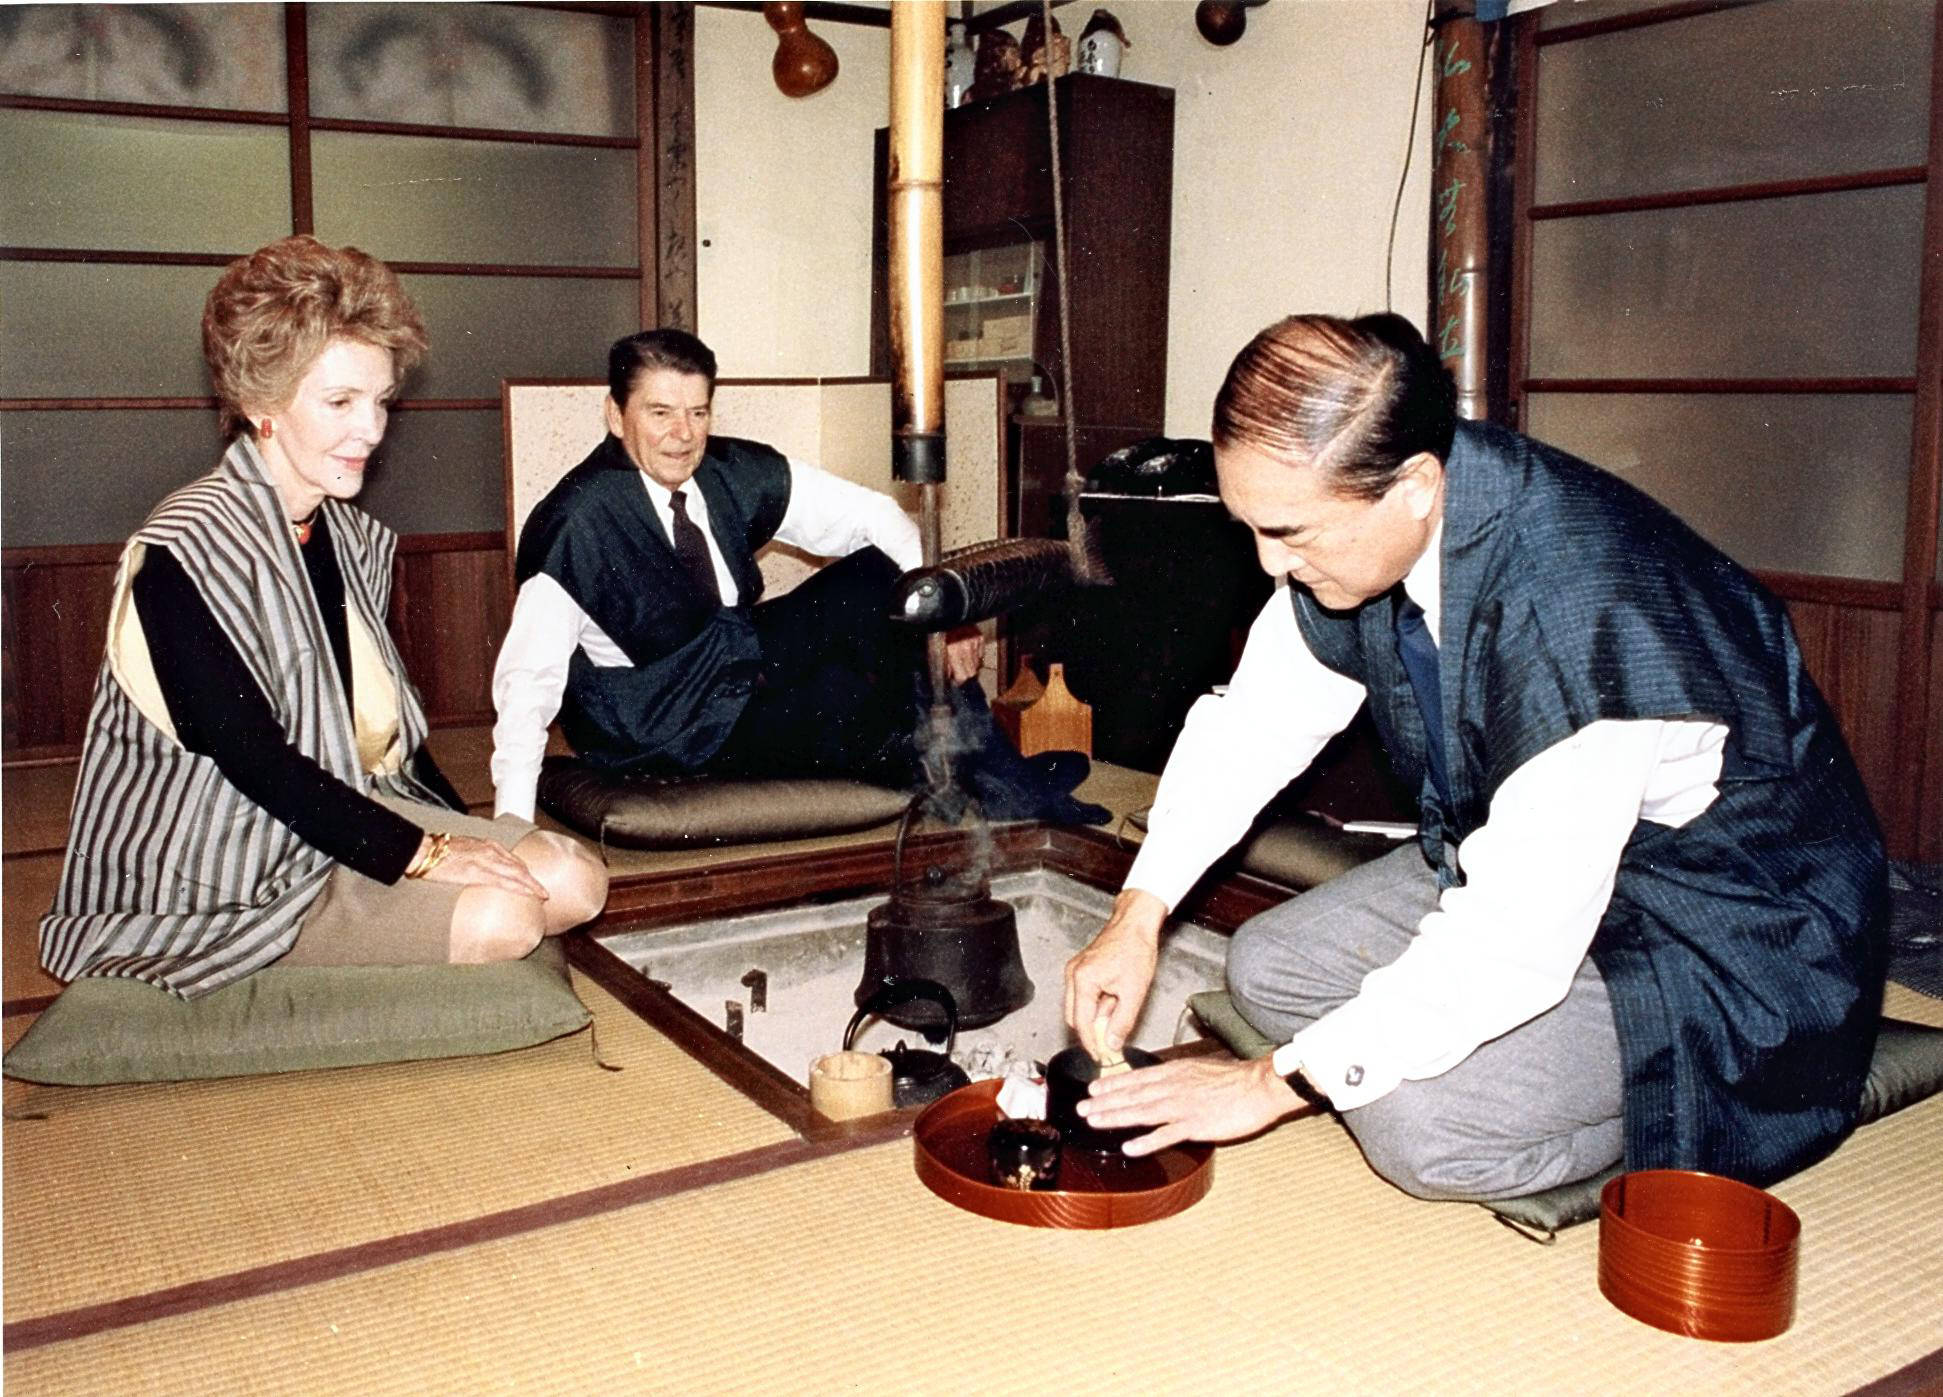 Yasuhiro Nakasone prépare le thé pour Ronald Reagan et son épouse Nancy dans la villa de Nakasone à Tokyo, le 11 novembre 1983. © The Yomiuri Shimbun via AP Images